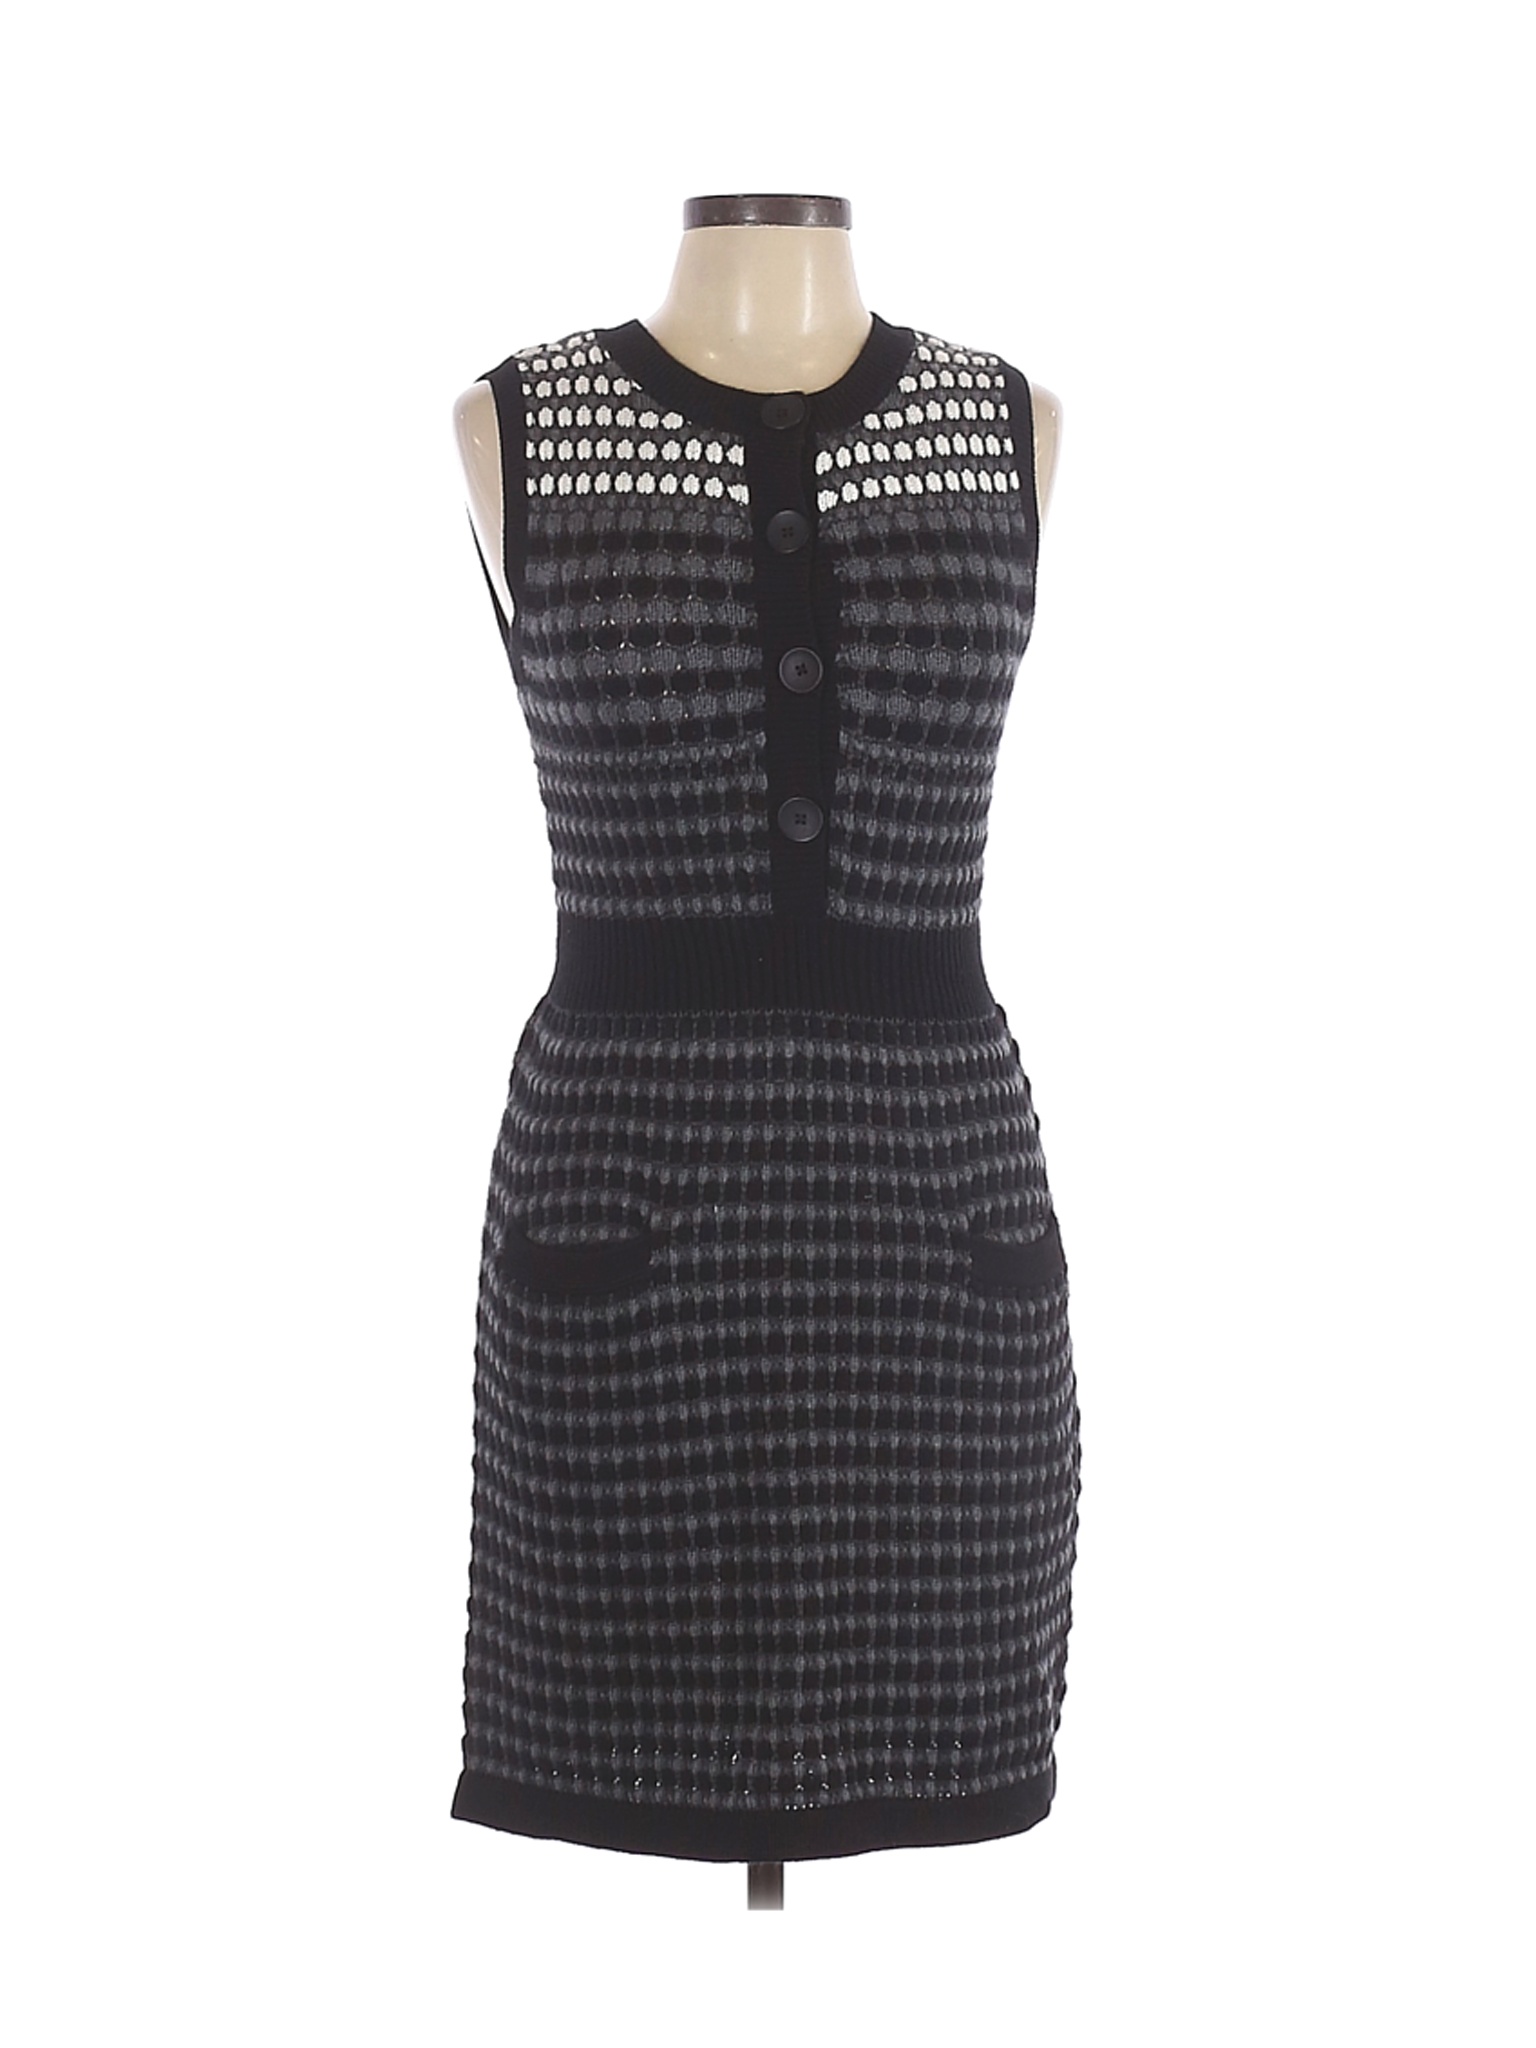 Spring & Mercer Women Black Casual Dress L | eBay